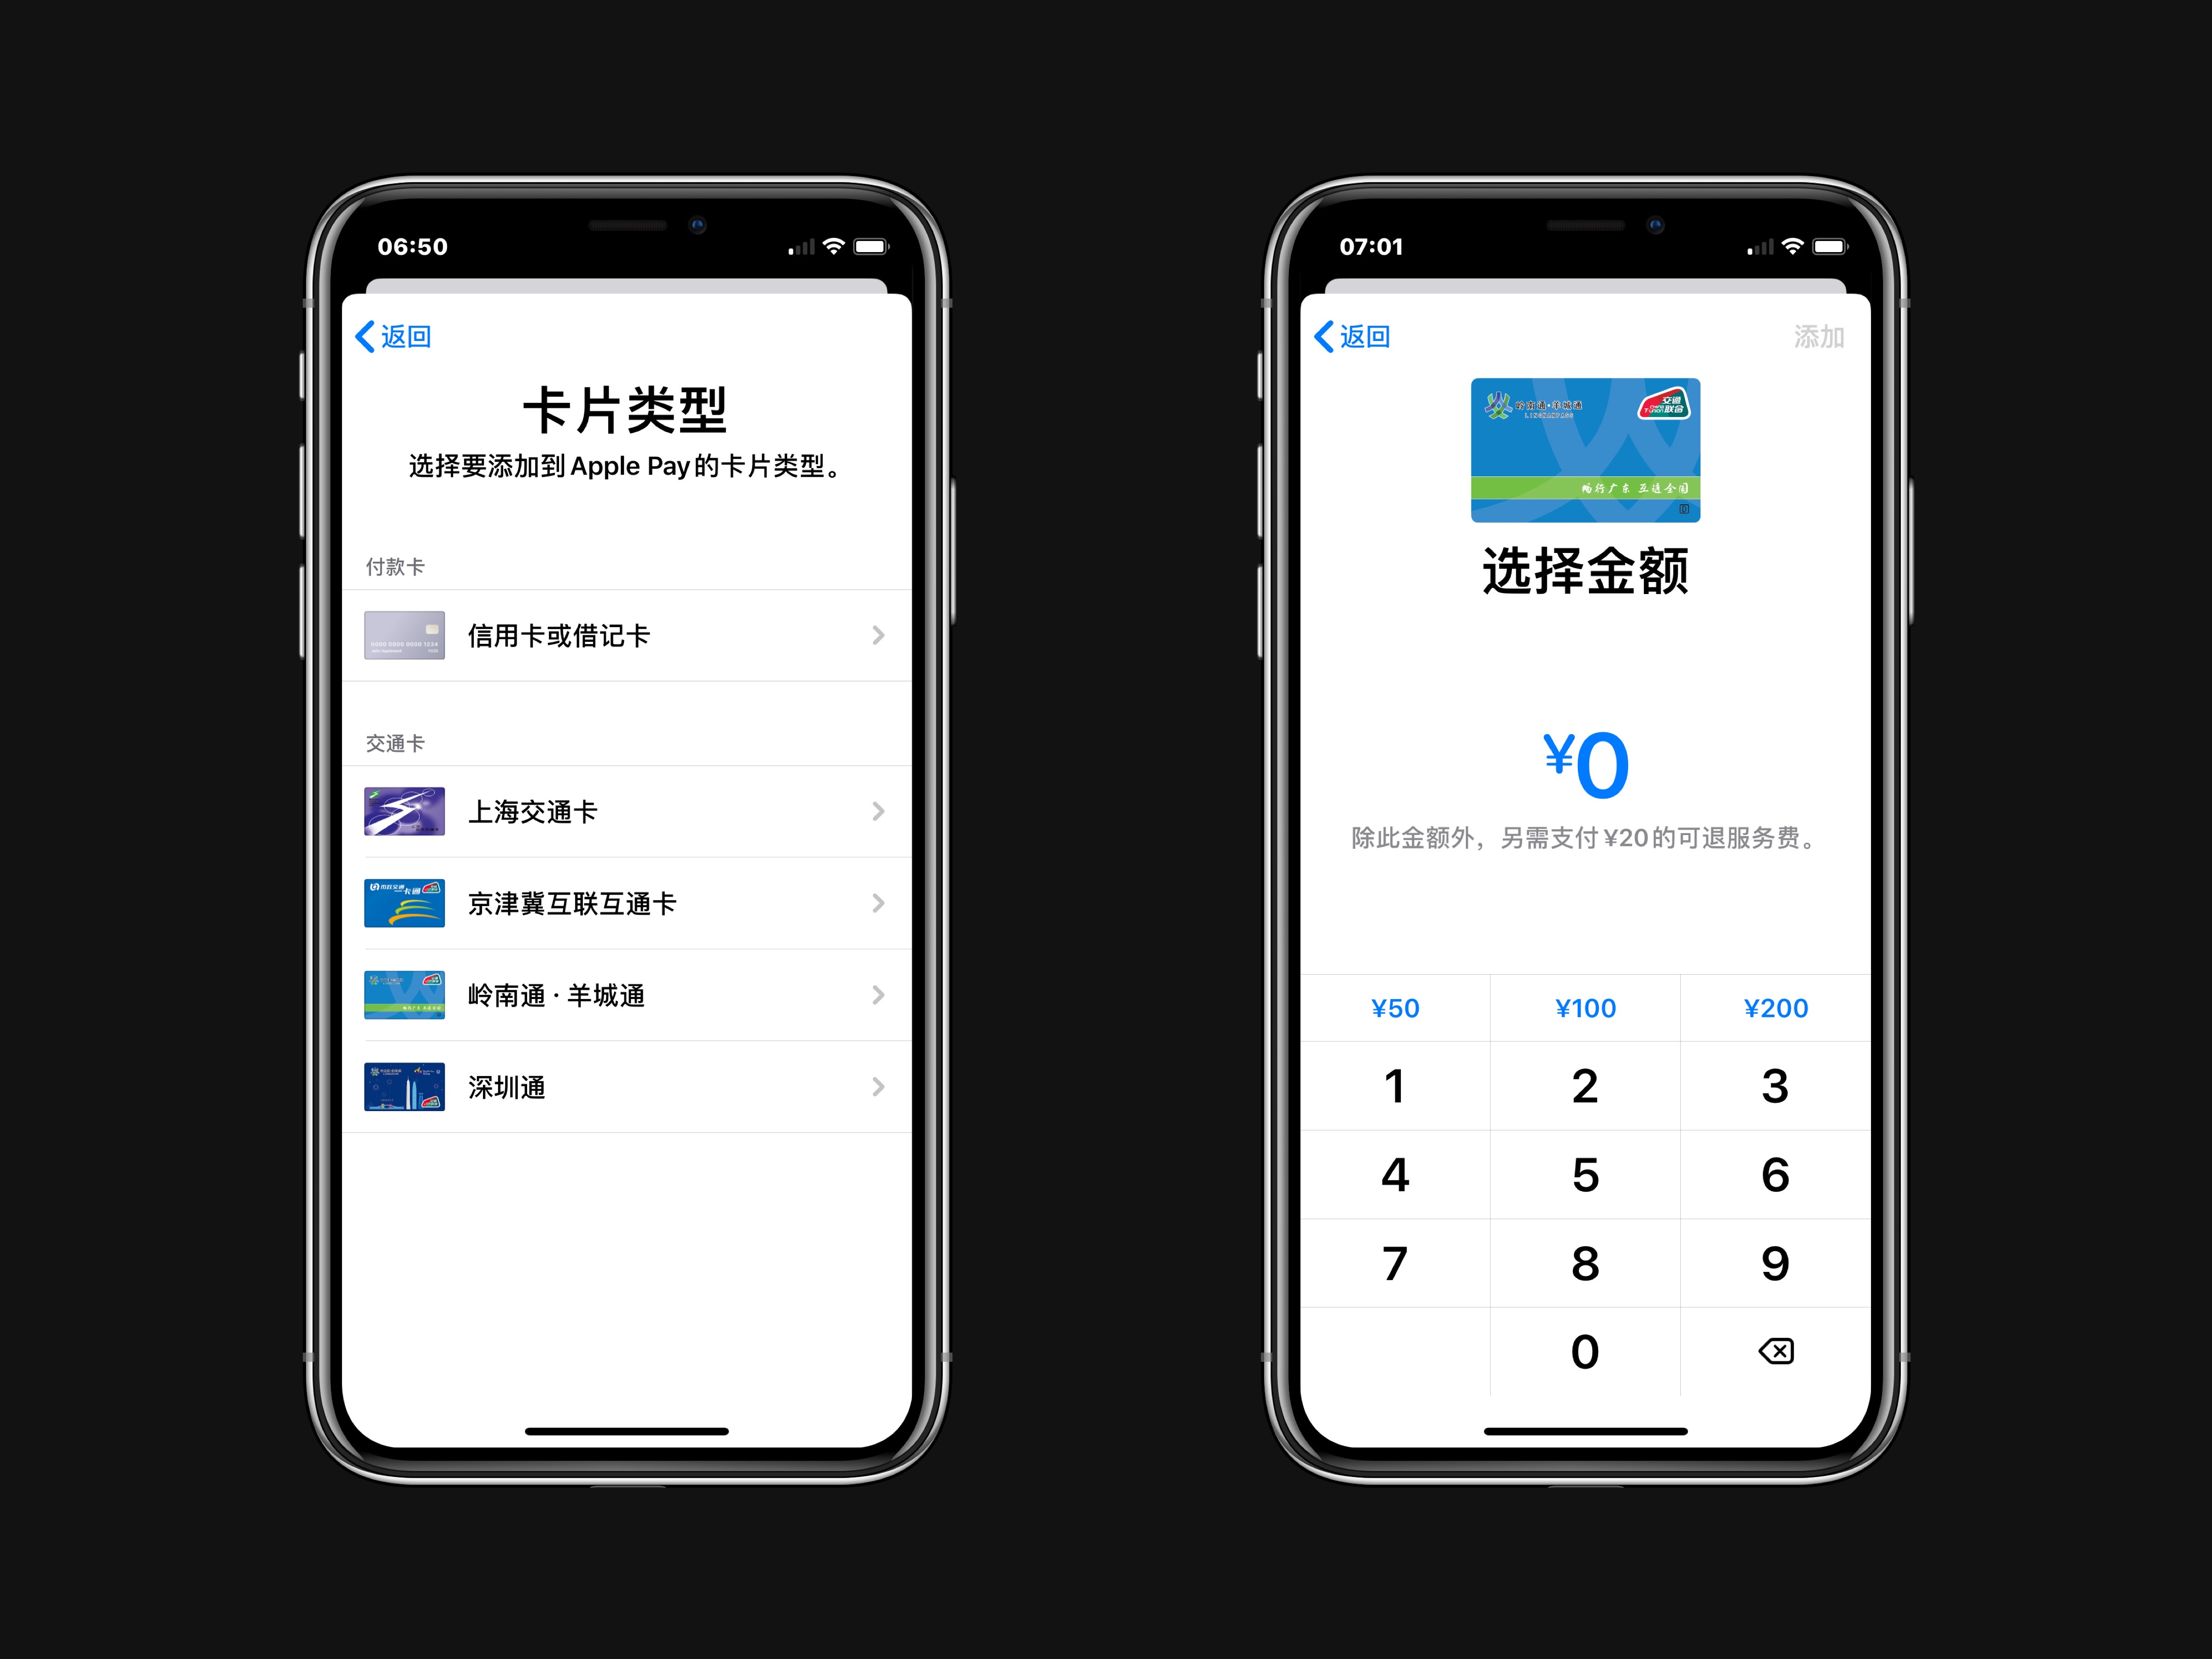 “岭南通 · 羊城通”正式加入 Apple Pay 交通卡